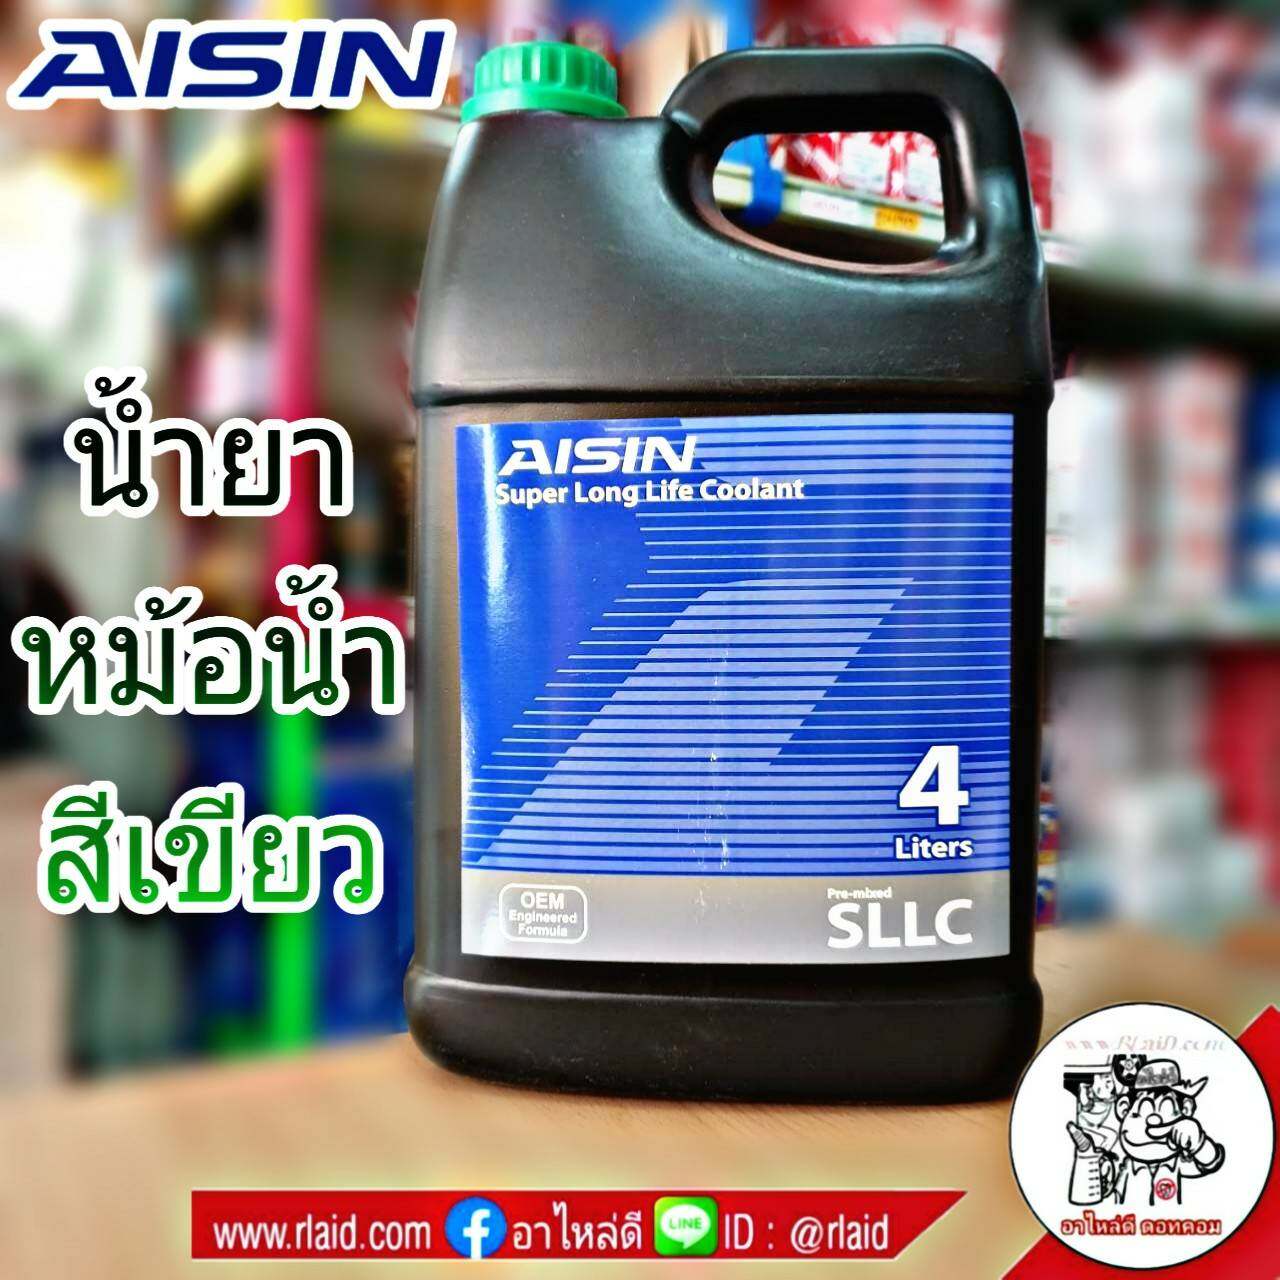 คูลแลนท์ AISIN ไอซิน สีเขียว 4ลิตร น้ำยาหม้อน้ำ น้ำยาเติมหม้อน้ำ น้ำยาหล่อเย็น Coolant